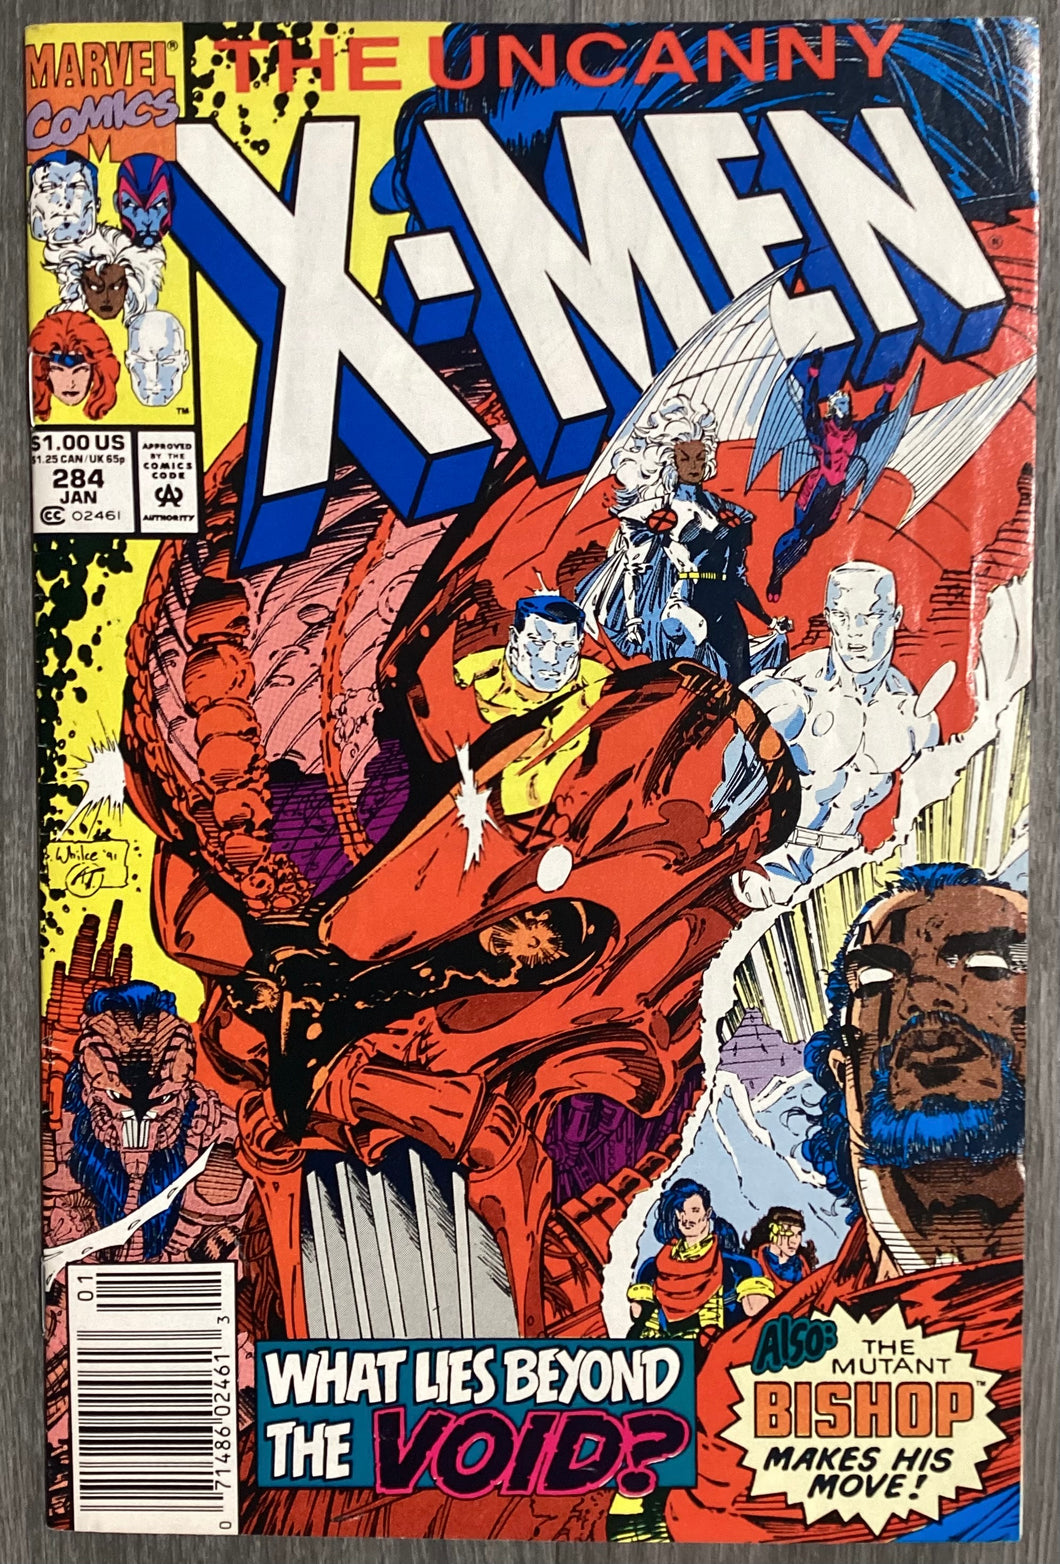 Uncanny X-Men No. #284 1992 Marvel Comics